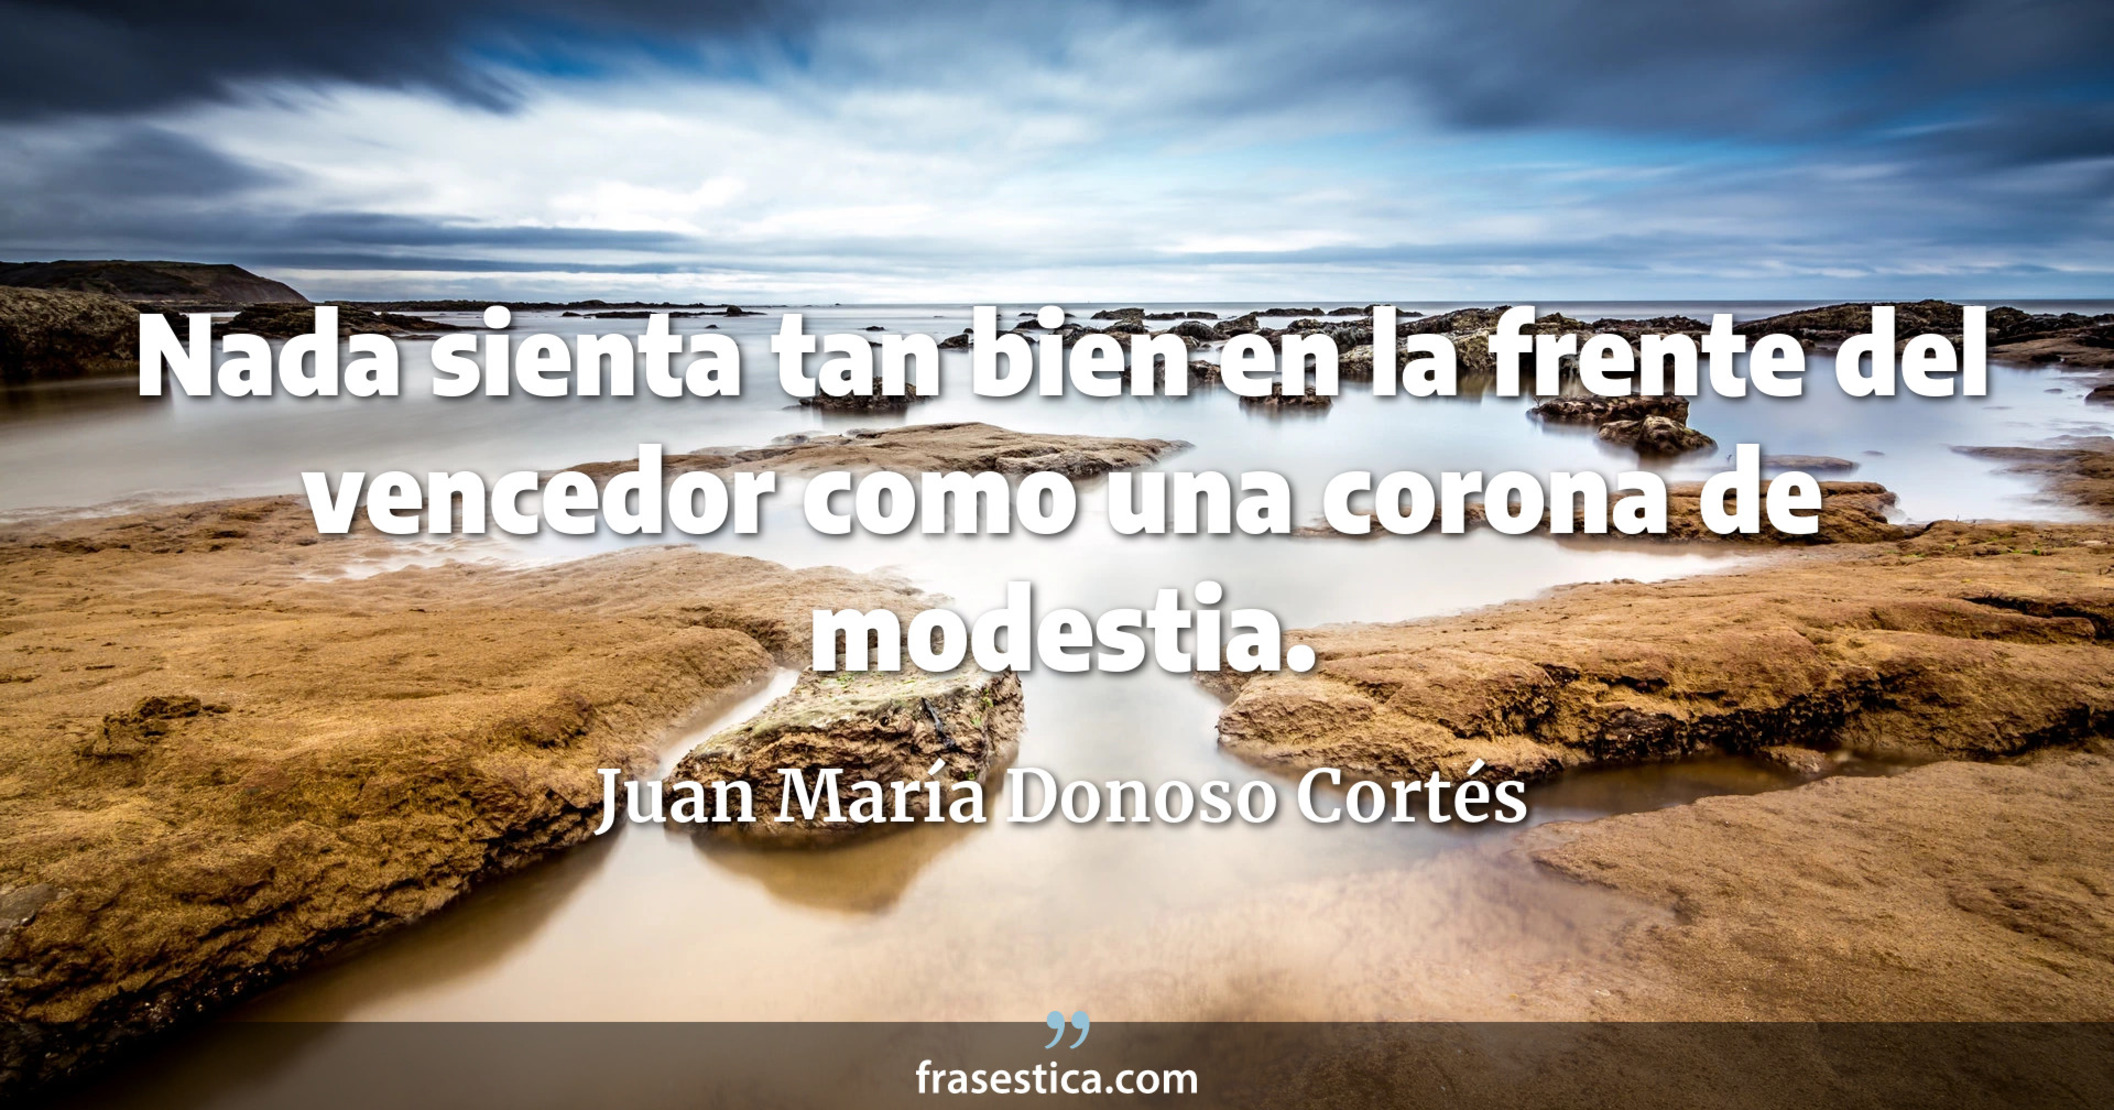 Nada sienta tan bien en la frente del vencedor como una corona de modestia. - Juan María Donoso Cortés